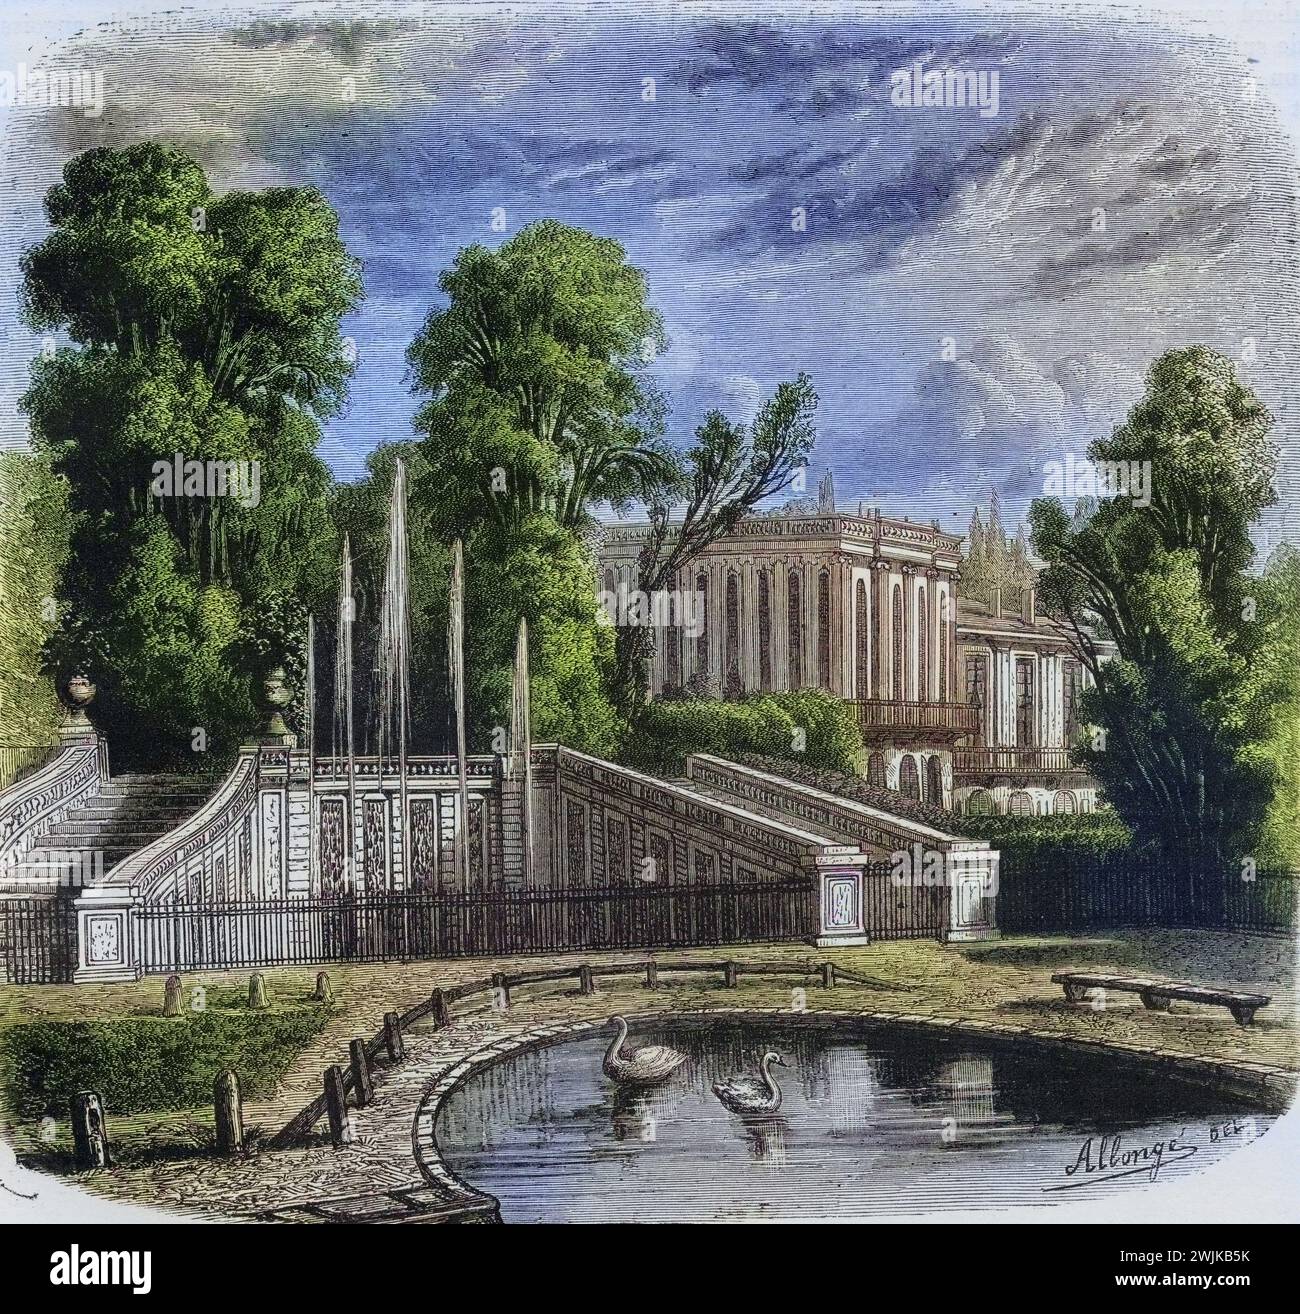 Le petit Trianon in Versailles, Frankreich, Historisch, digital restaurierte Reproduktion von einer Vorlage aus dem 19. Jahrhundert, date du dossier non précisée Banque D'Images